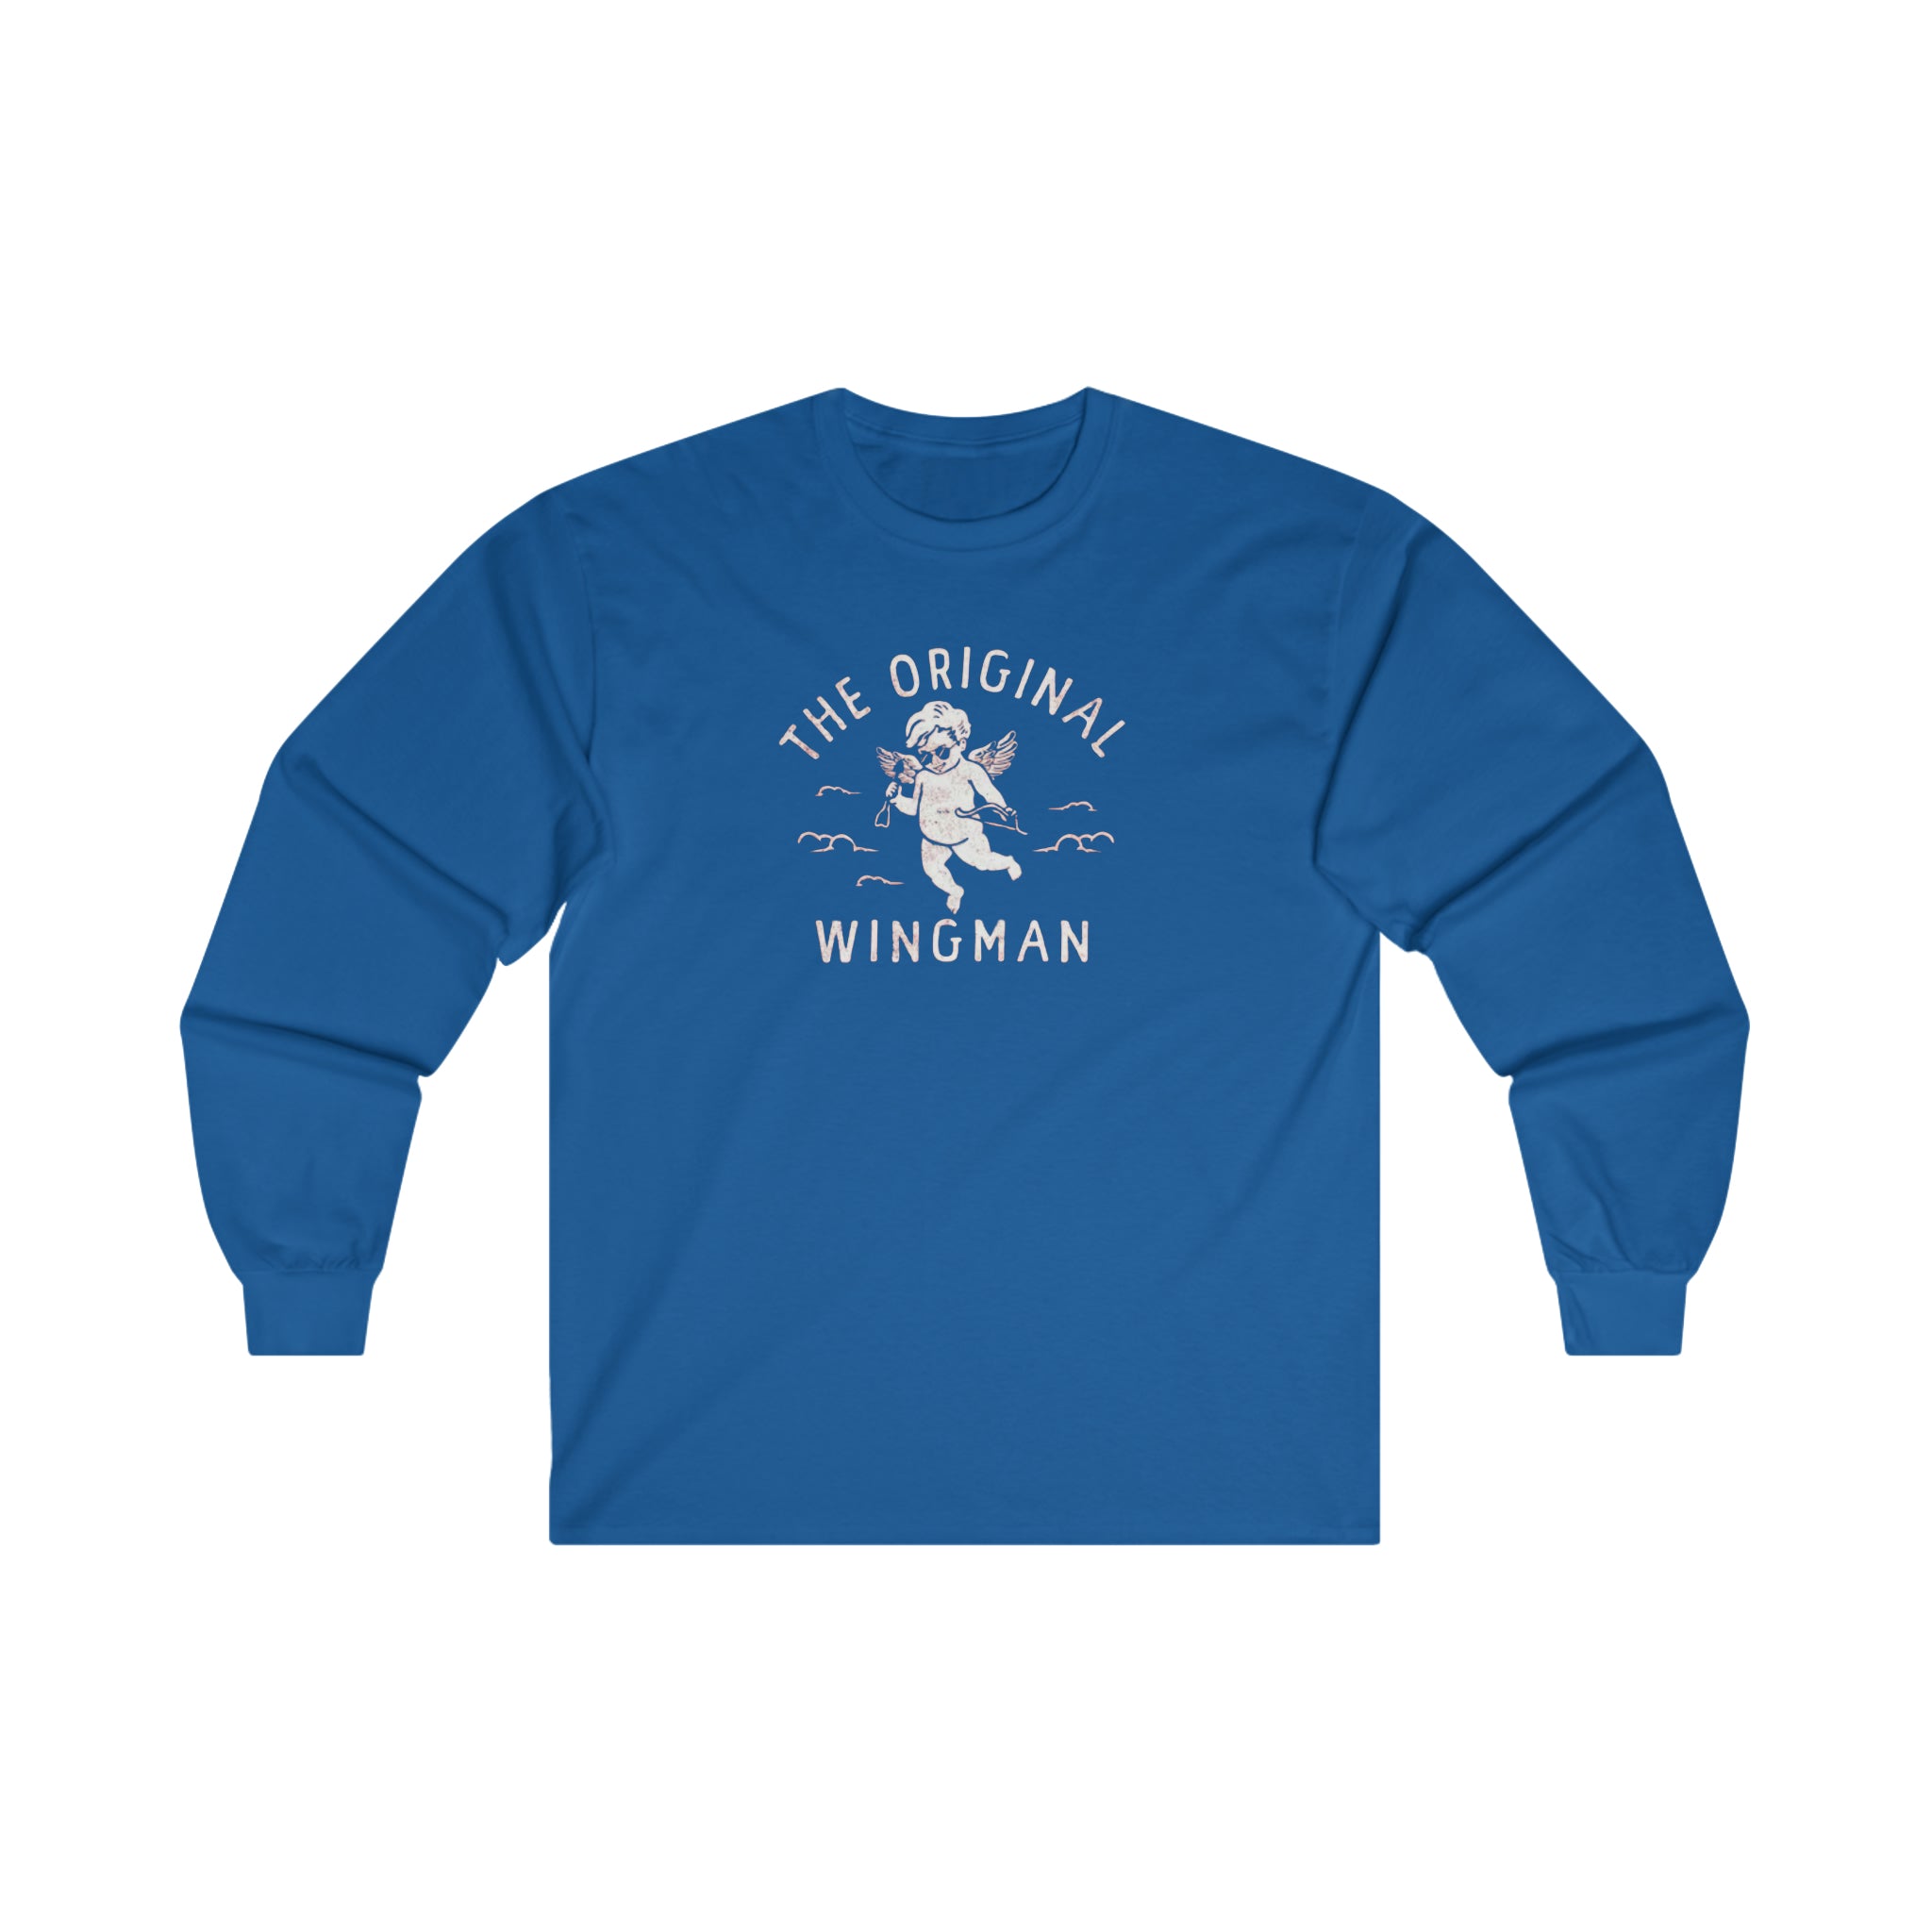 The Original Wingman Long-Sleeve T-Shirt